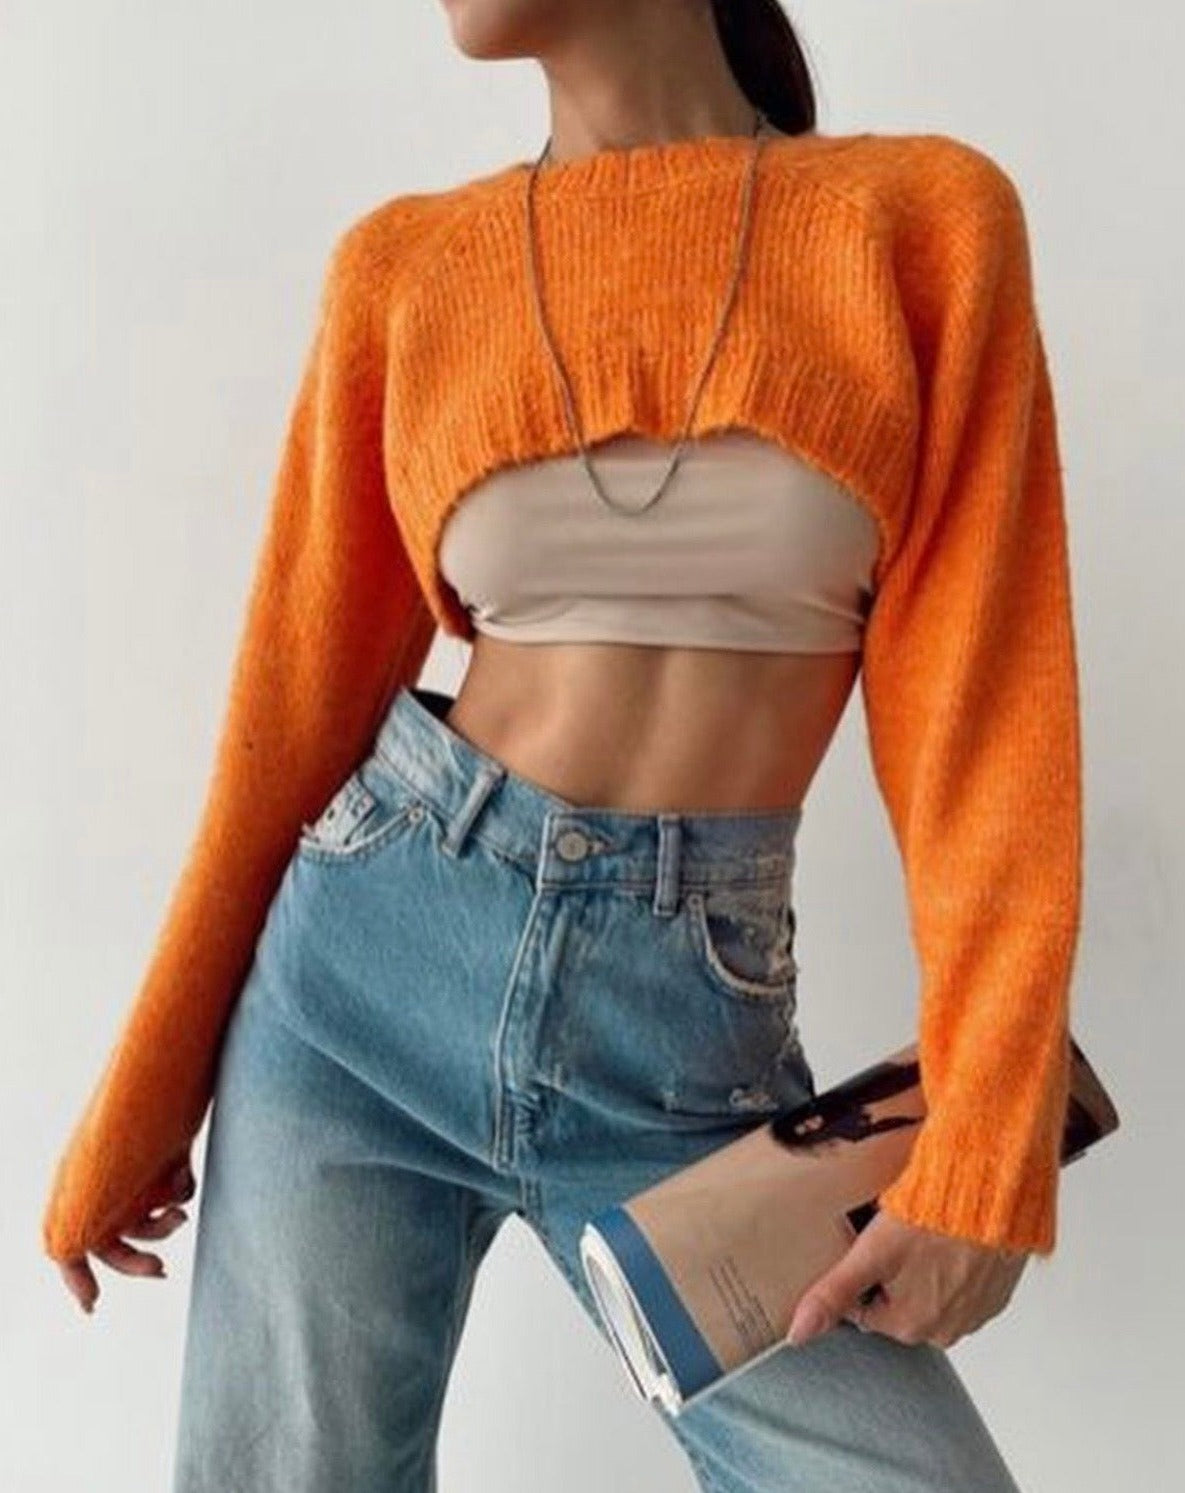 Дамски пуловер POLLA  https://bvseductive.com/products/дамски-пуловер-polla  50 % памук 50 % акрил къс оранжев пуловер със стилен дизайн висококачествена&nbsp;изработка от фино плетиво модел , който лесно може да се съчетава чудесен избор за ежедневна визия